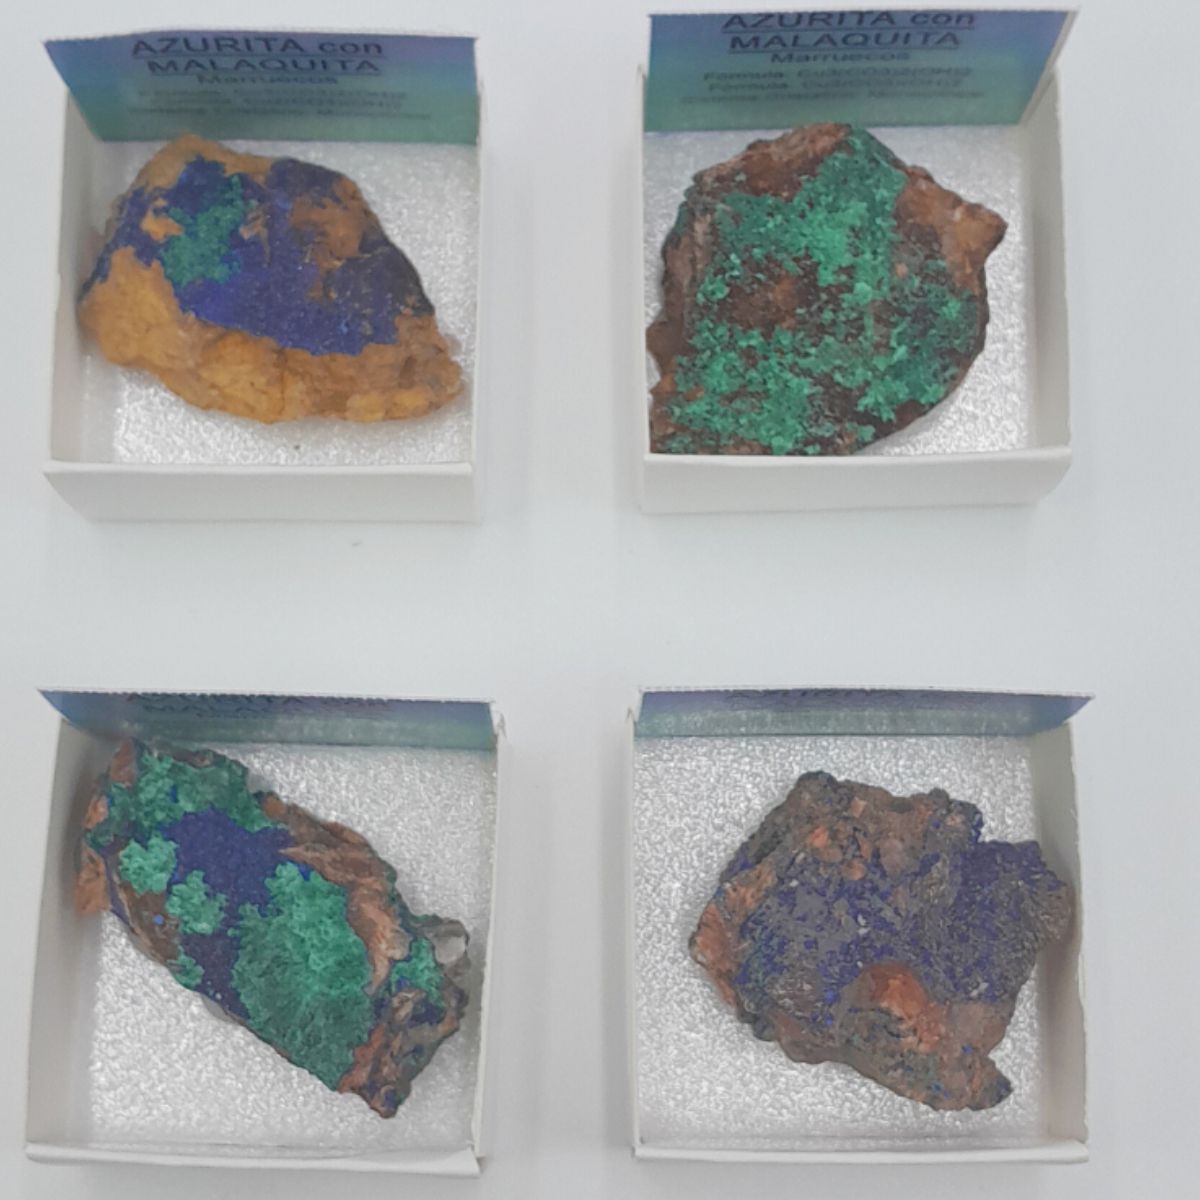 Piedra/Mineral Azurita con Malaquita